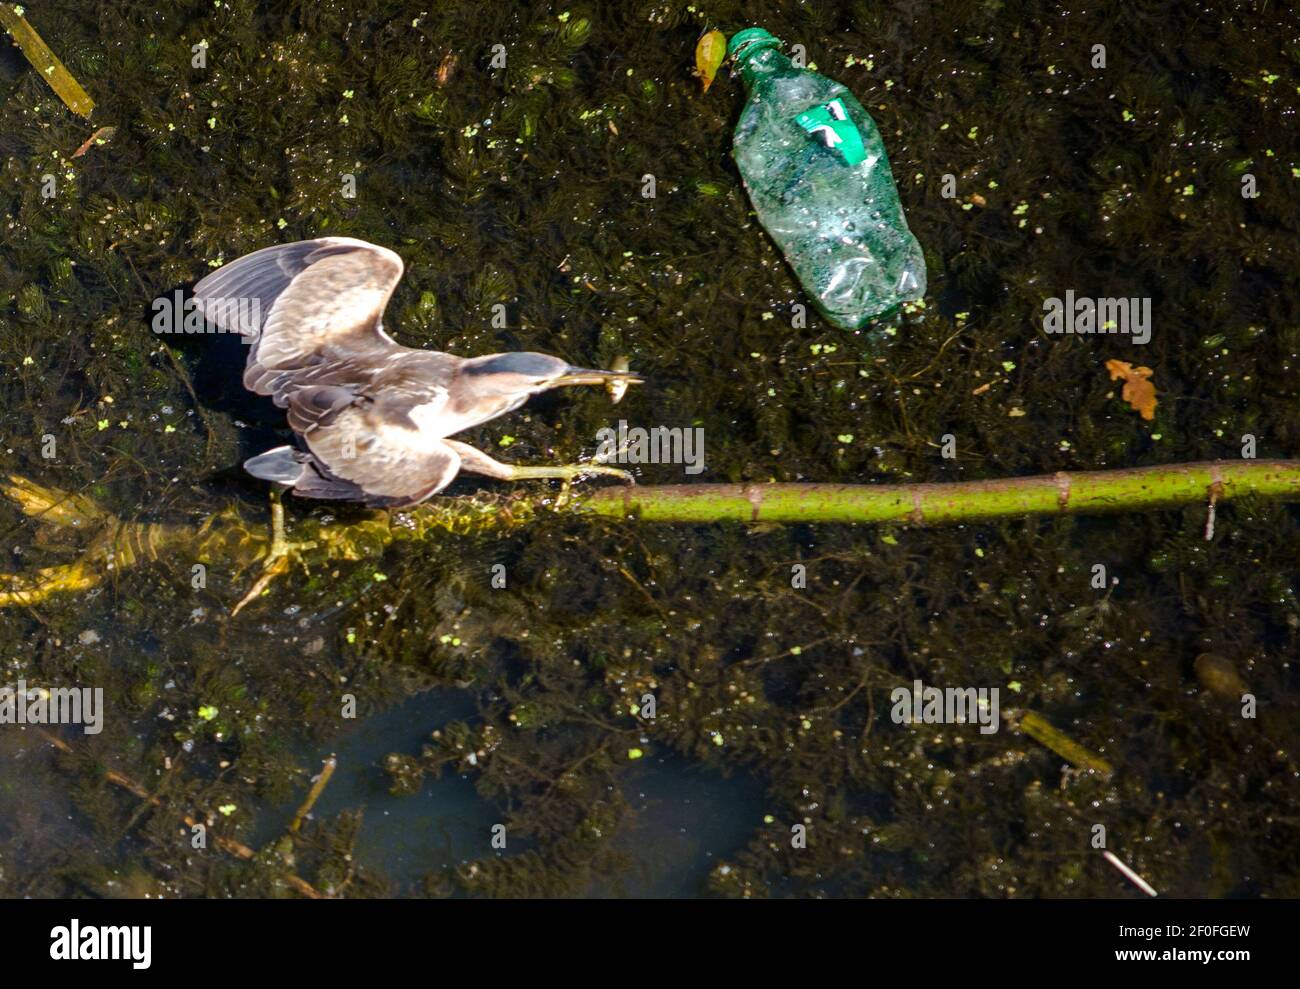 Un ave de agua, la pesca en el río sucio, con botella de plástico vestigio Foto de stock